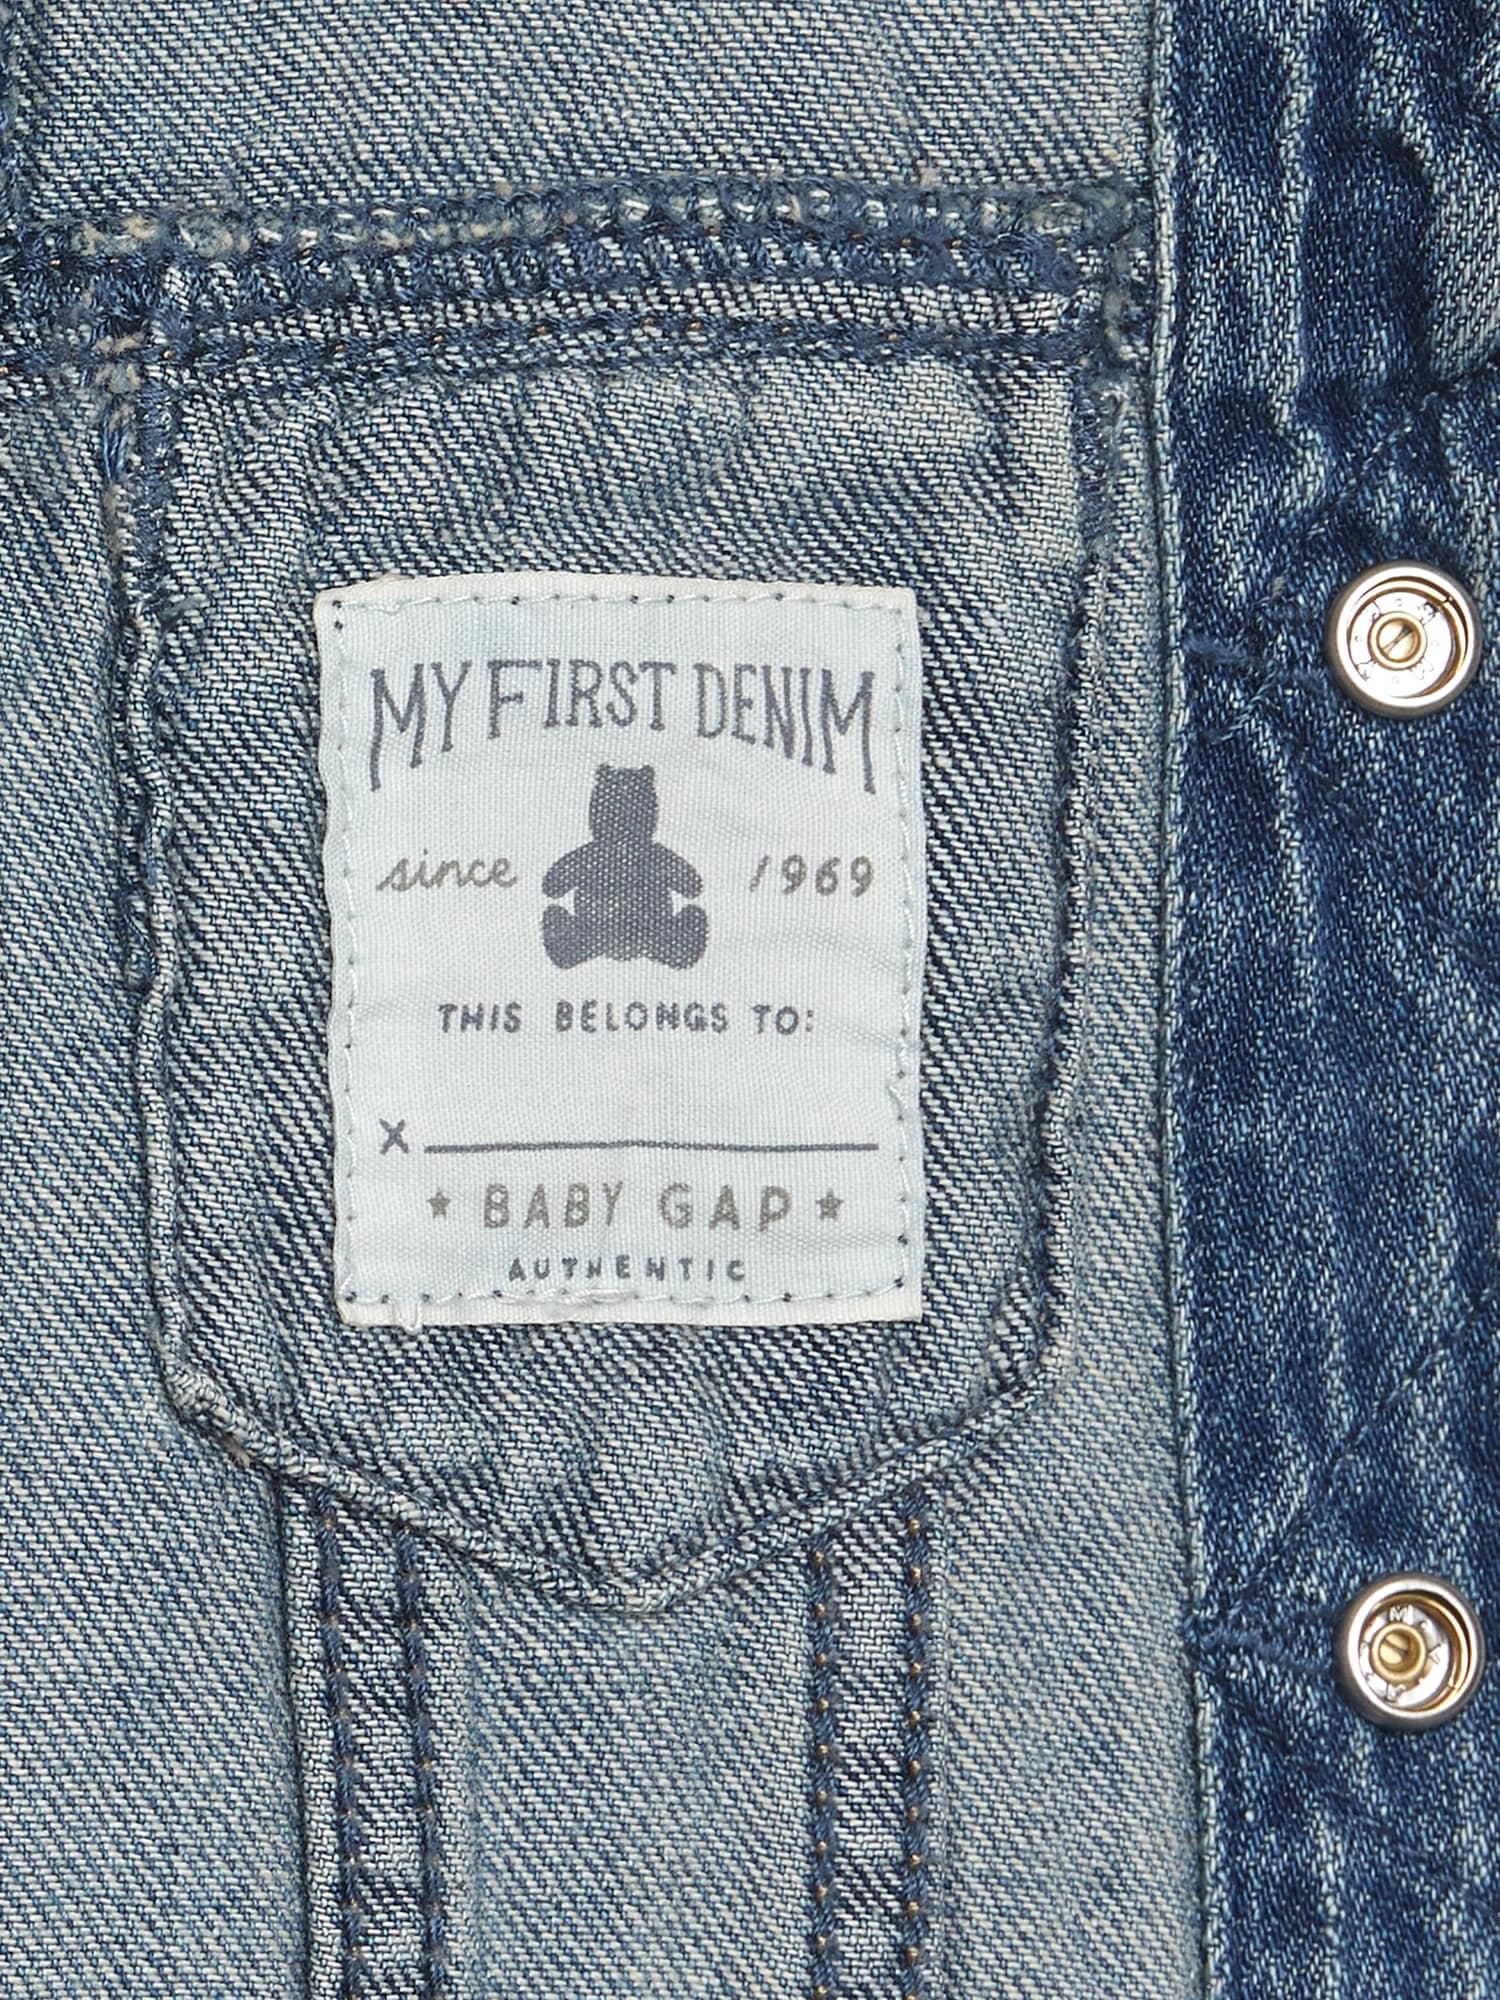 baby gap jean jacket